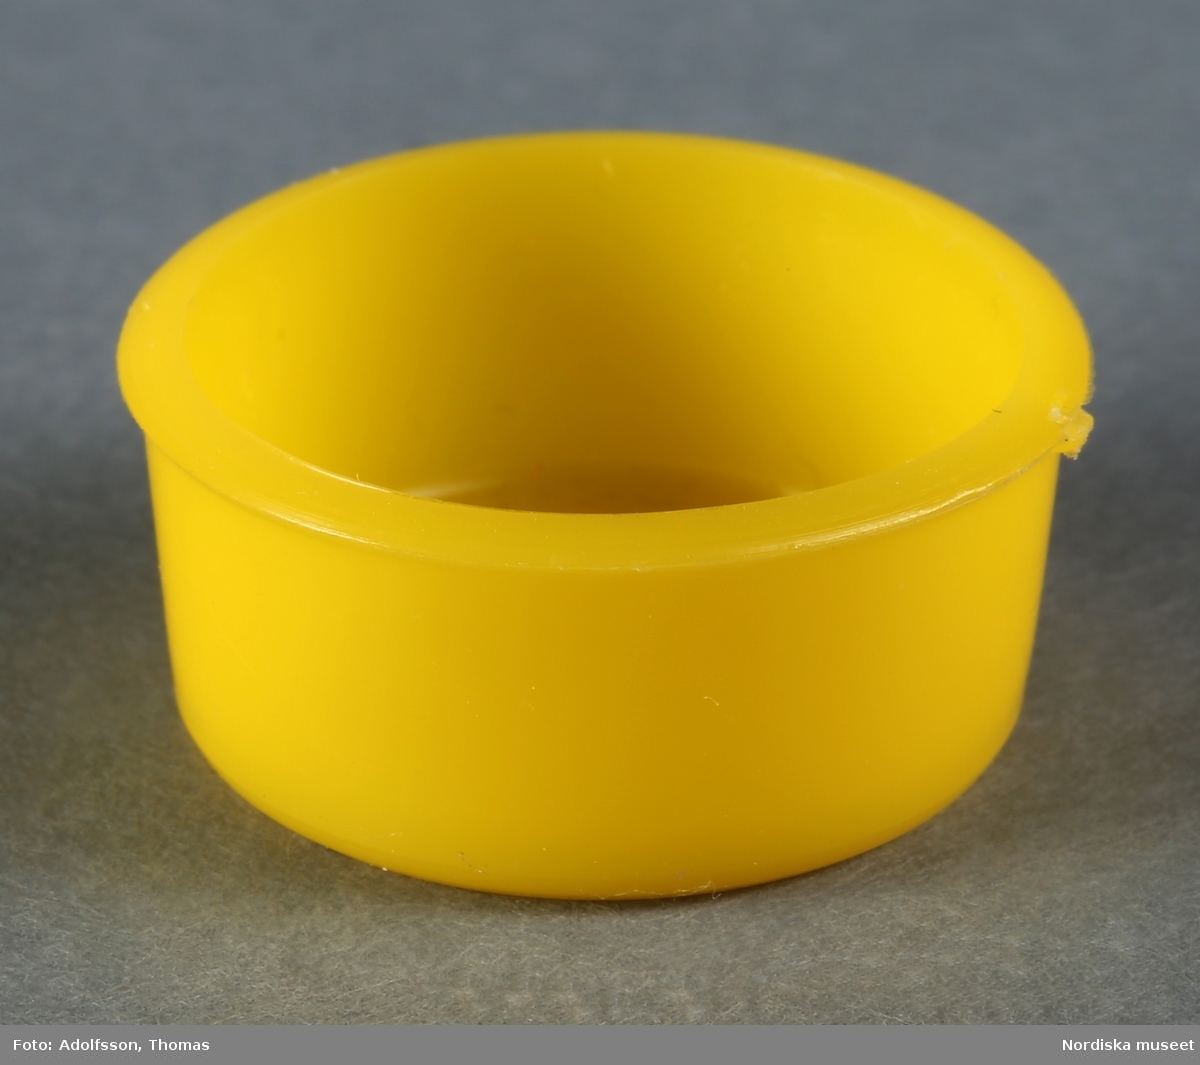 En rund tvättbalja av gul plast som hör till dockskåpsinredningen i källarens tvättstuga i dockskåp NM.0331721+.  Tvättbaljan står ovanpå tvättmaskinen (NM.0333458).